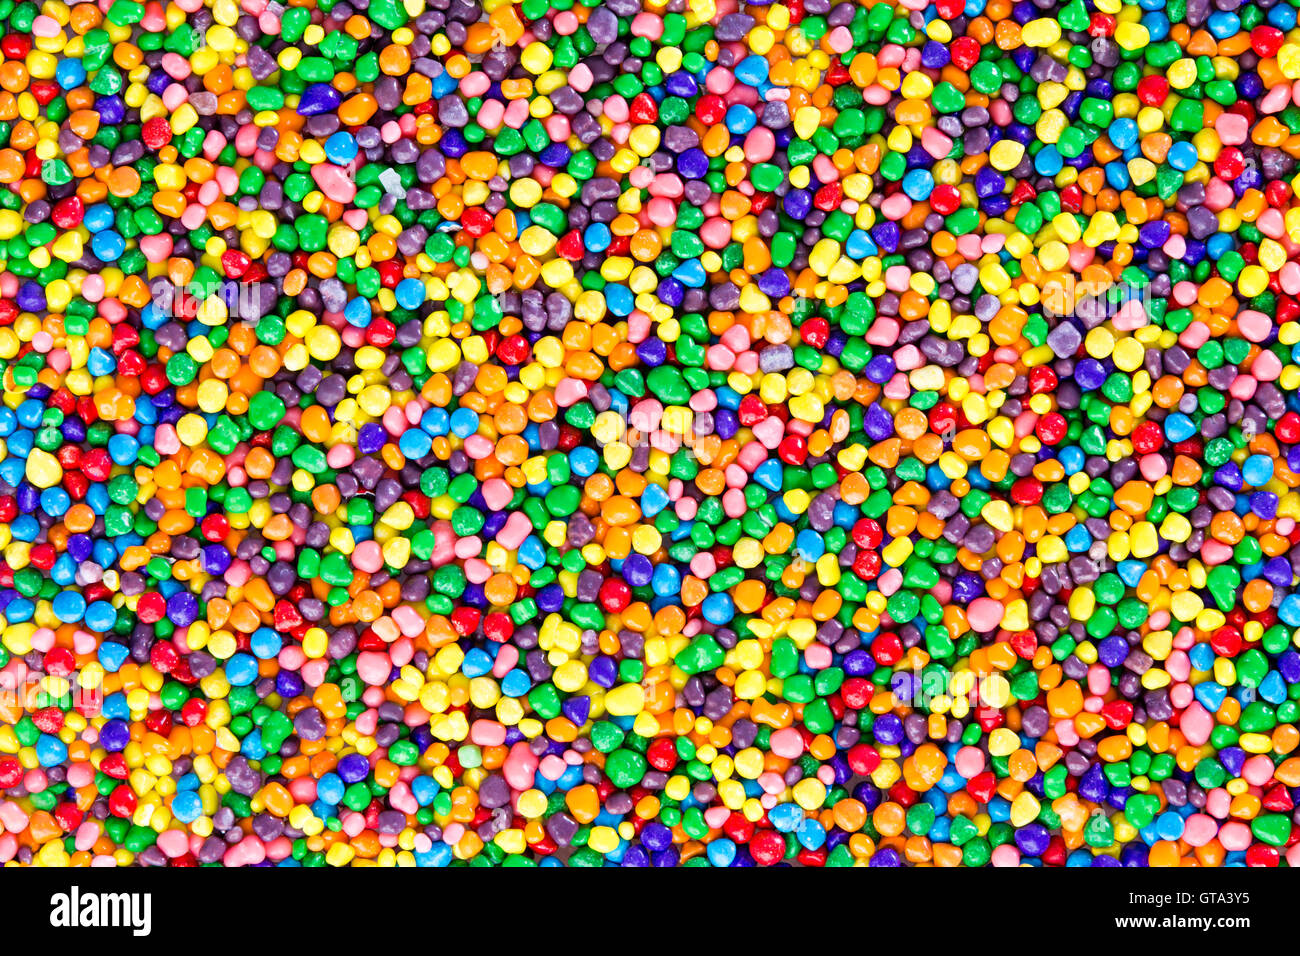 La texture de fond de sucre coloré perles bonbons aux couleurs de l'arc en ciel vue surcharge dans une couche full frame Banque D'Images